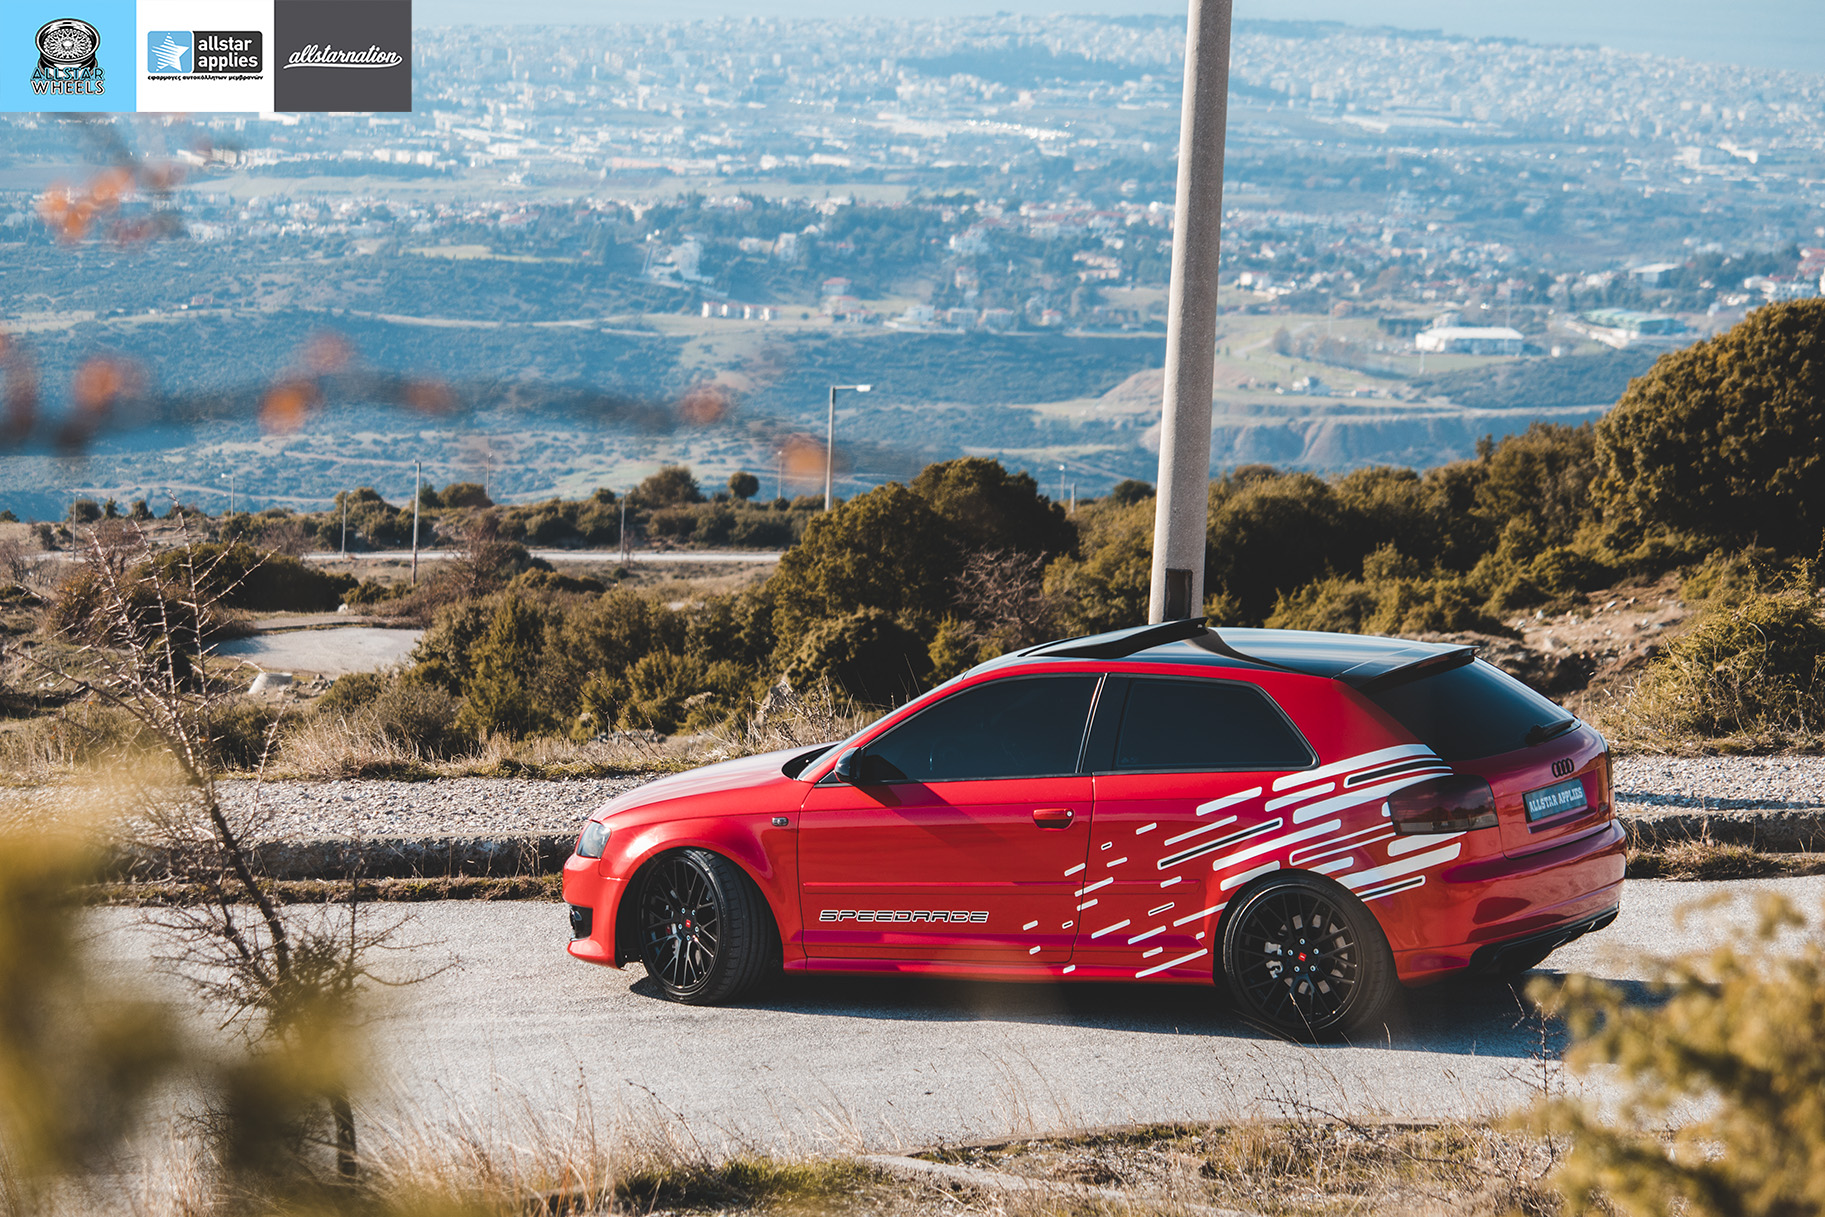 Audi s3 αλλαγή χρώματος με μεμβράνες στη Θεσσαλονίκη Allstar Applies